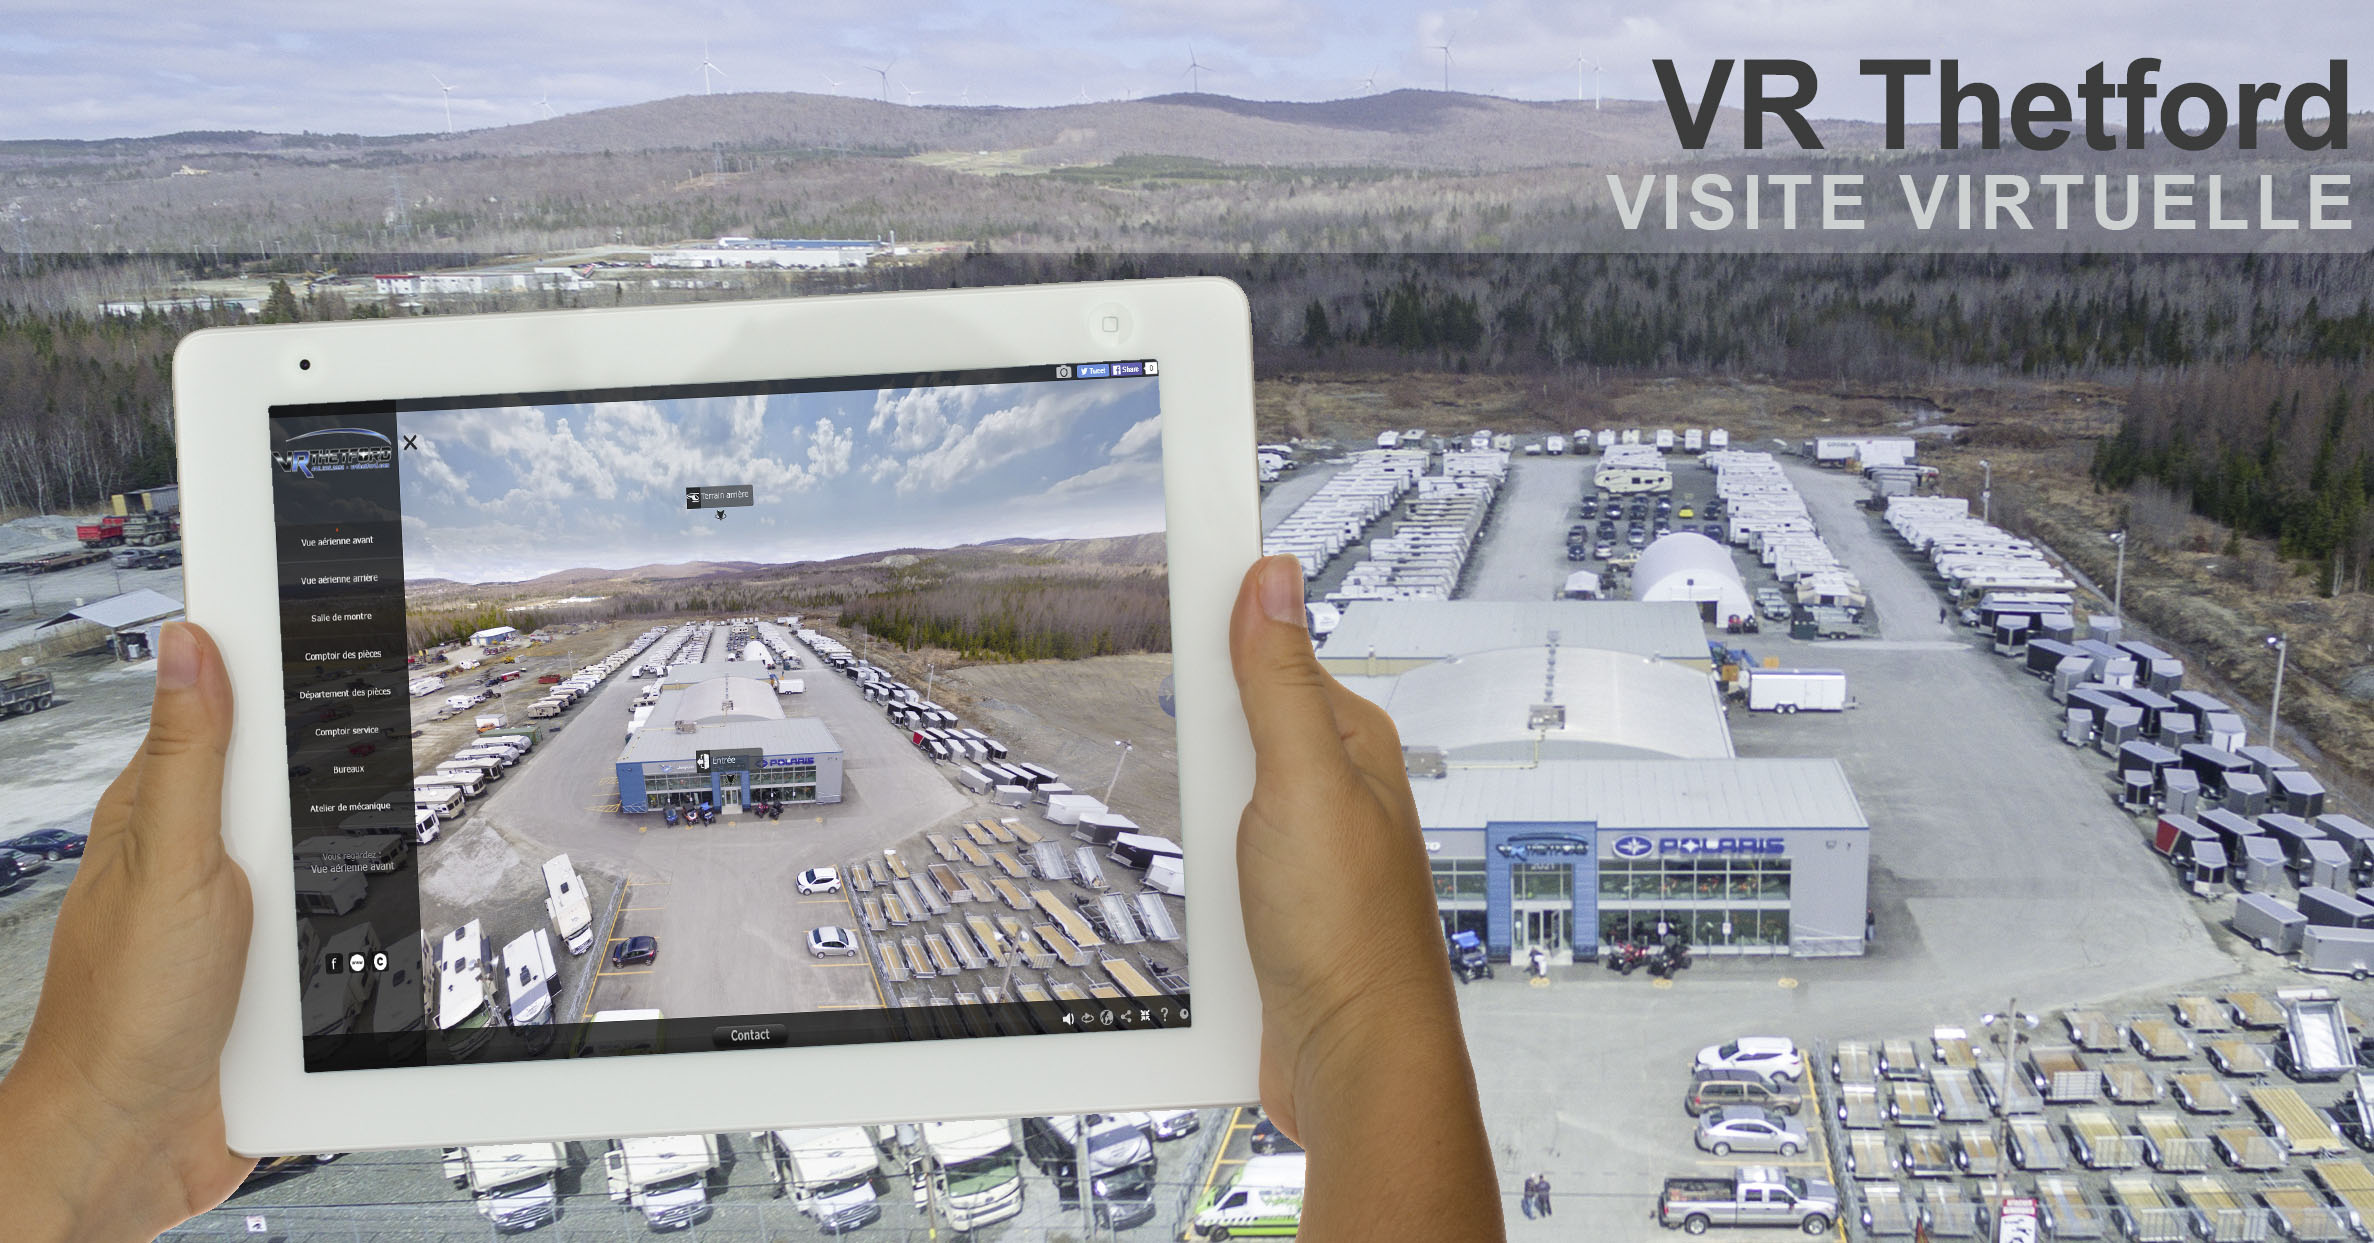 Visite virtuelle 360 degrés VR Thetford